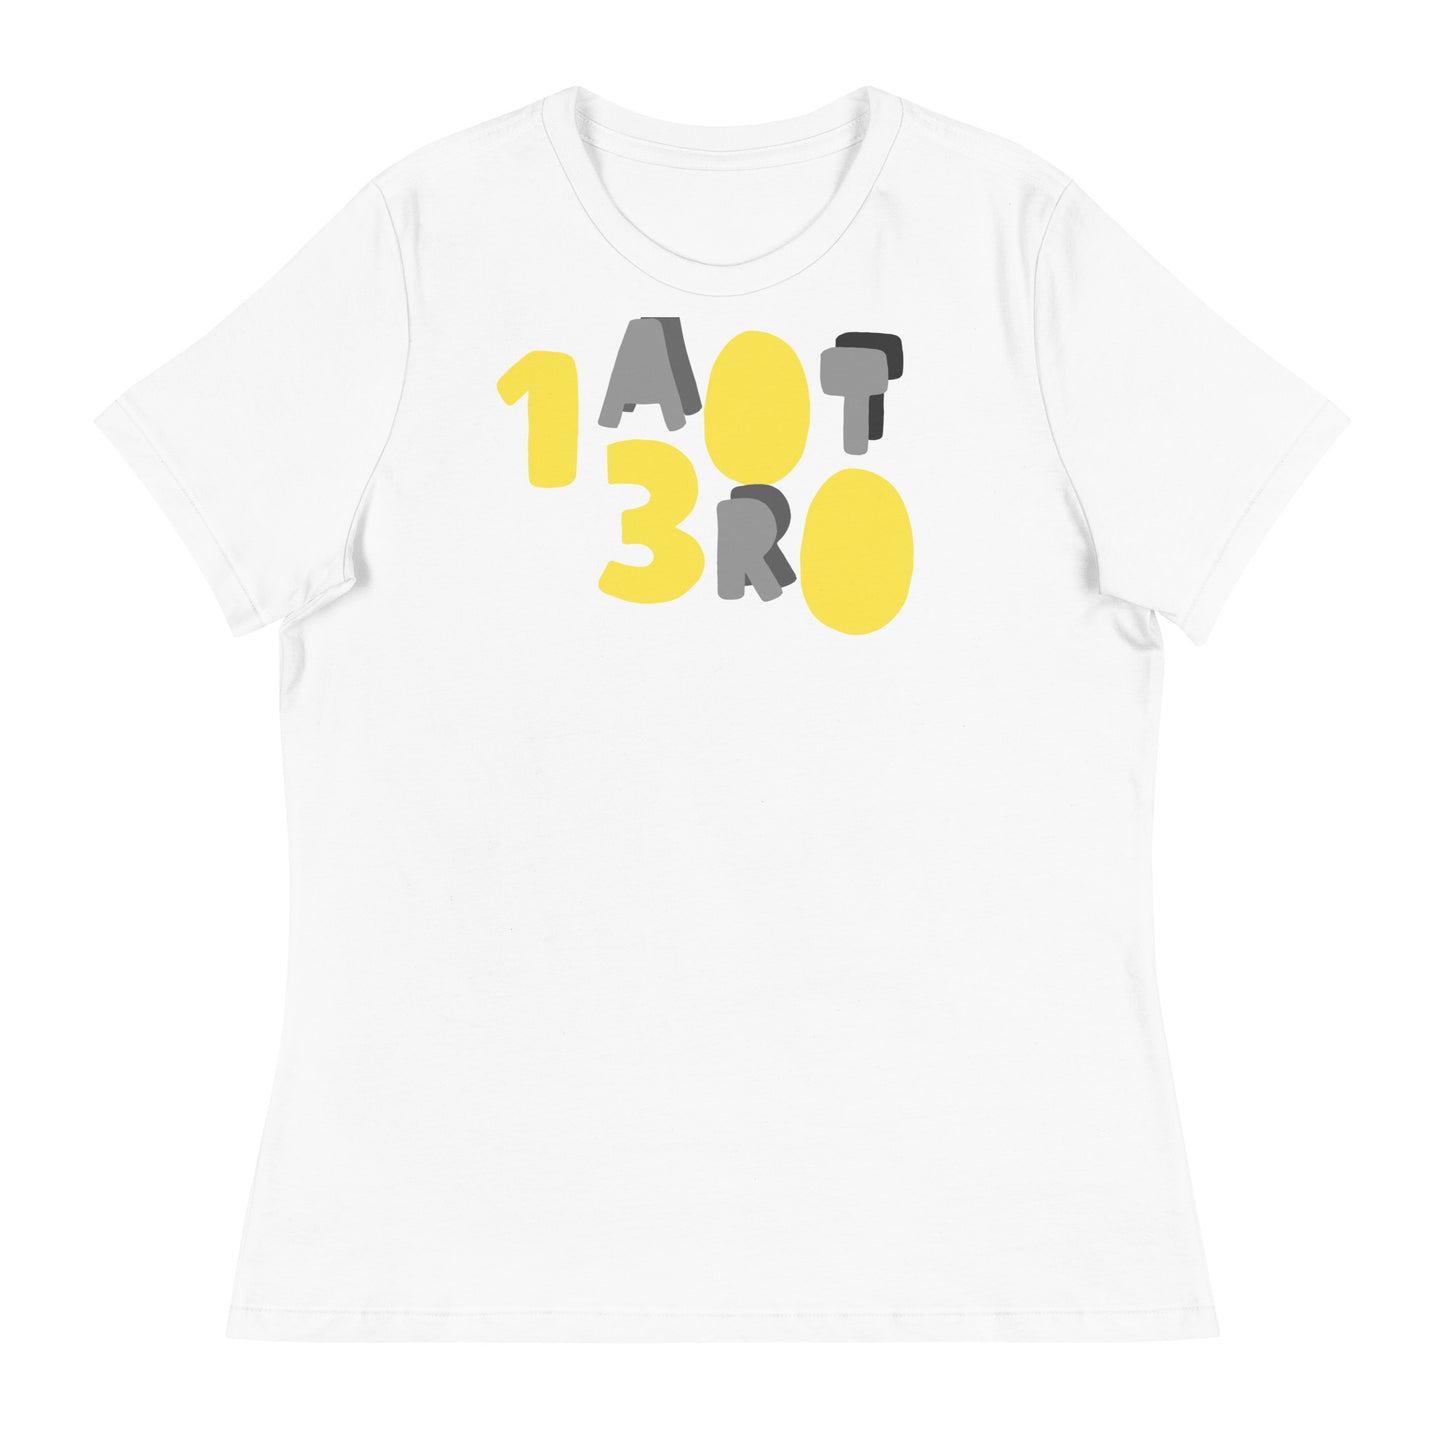 "1300 ART" Women's Relaxed T-Shirt